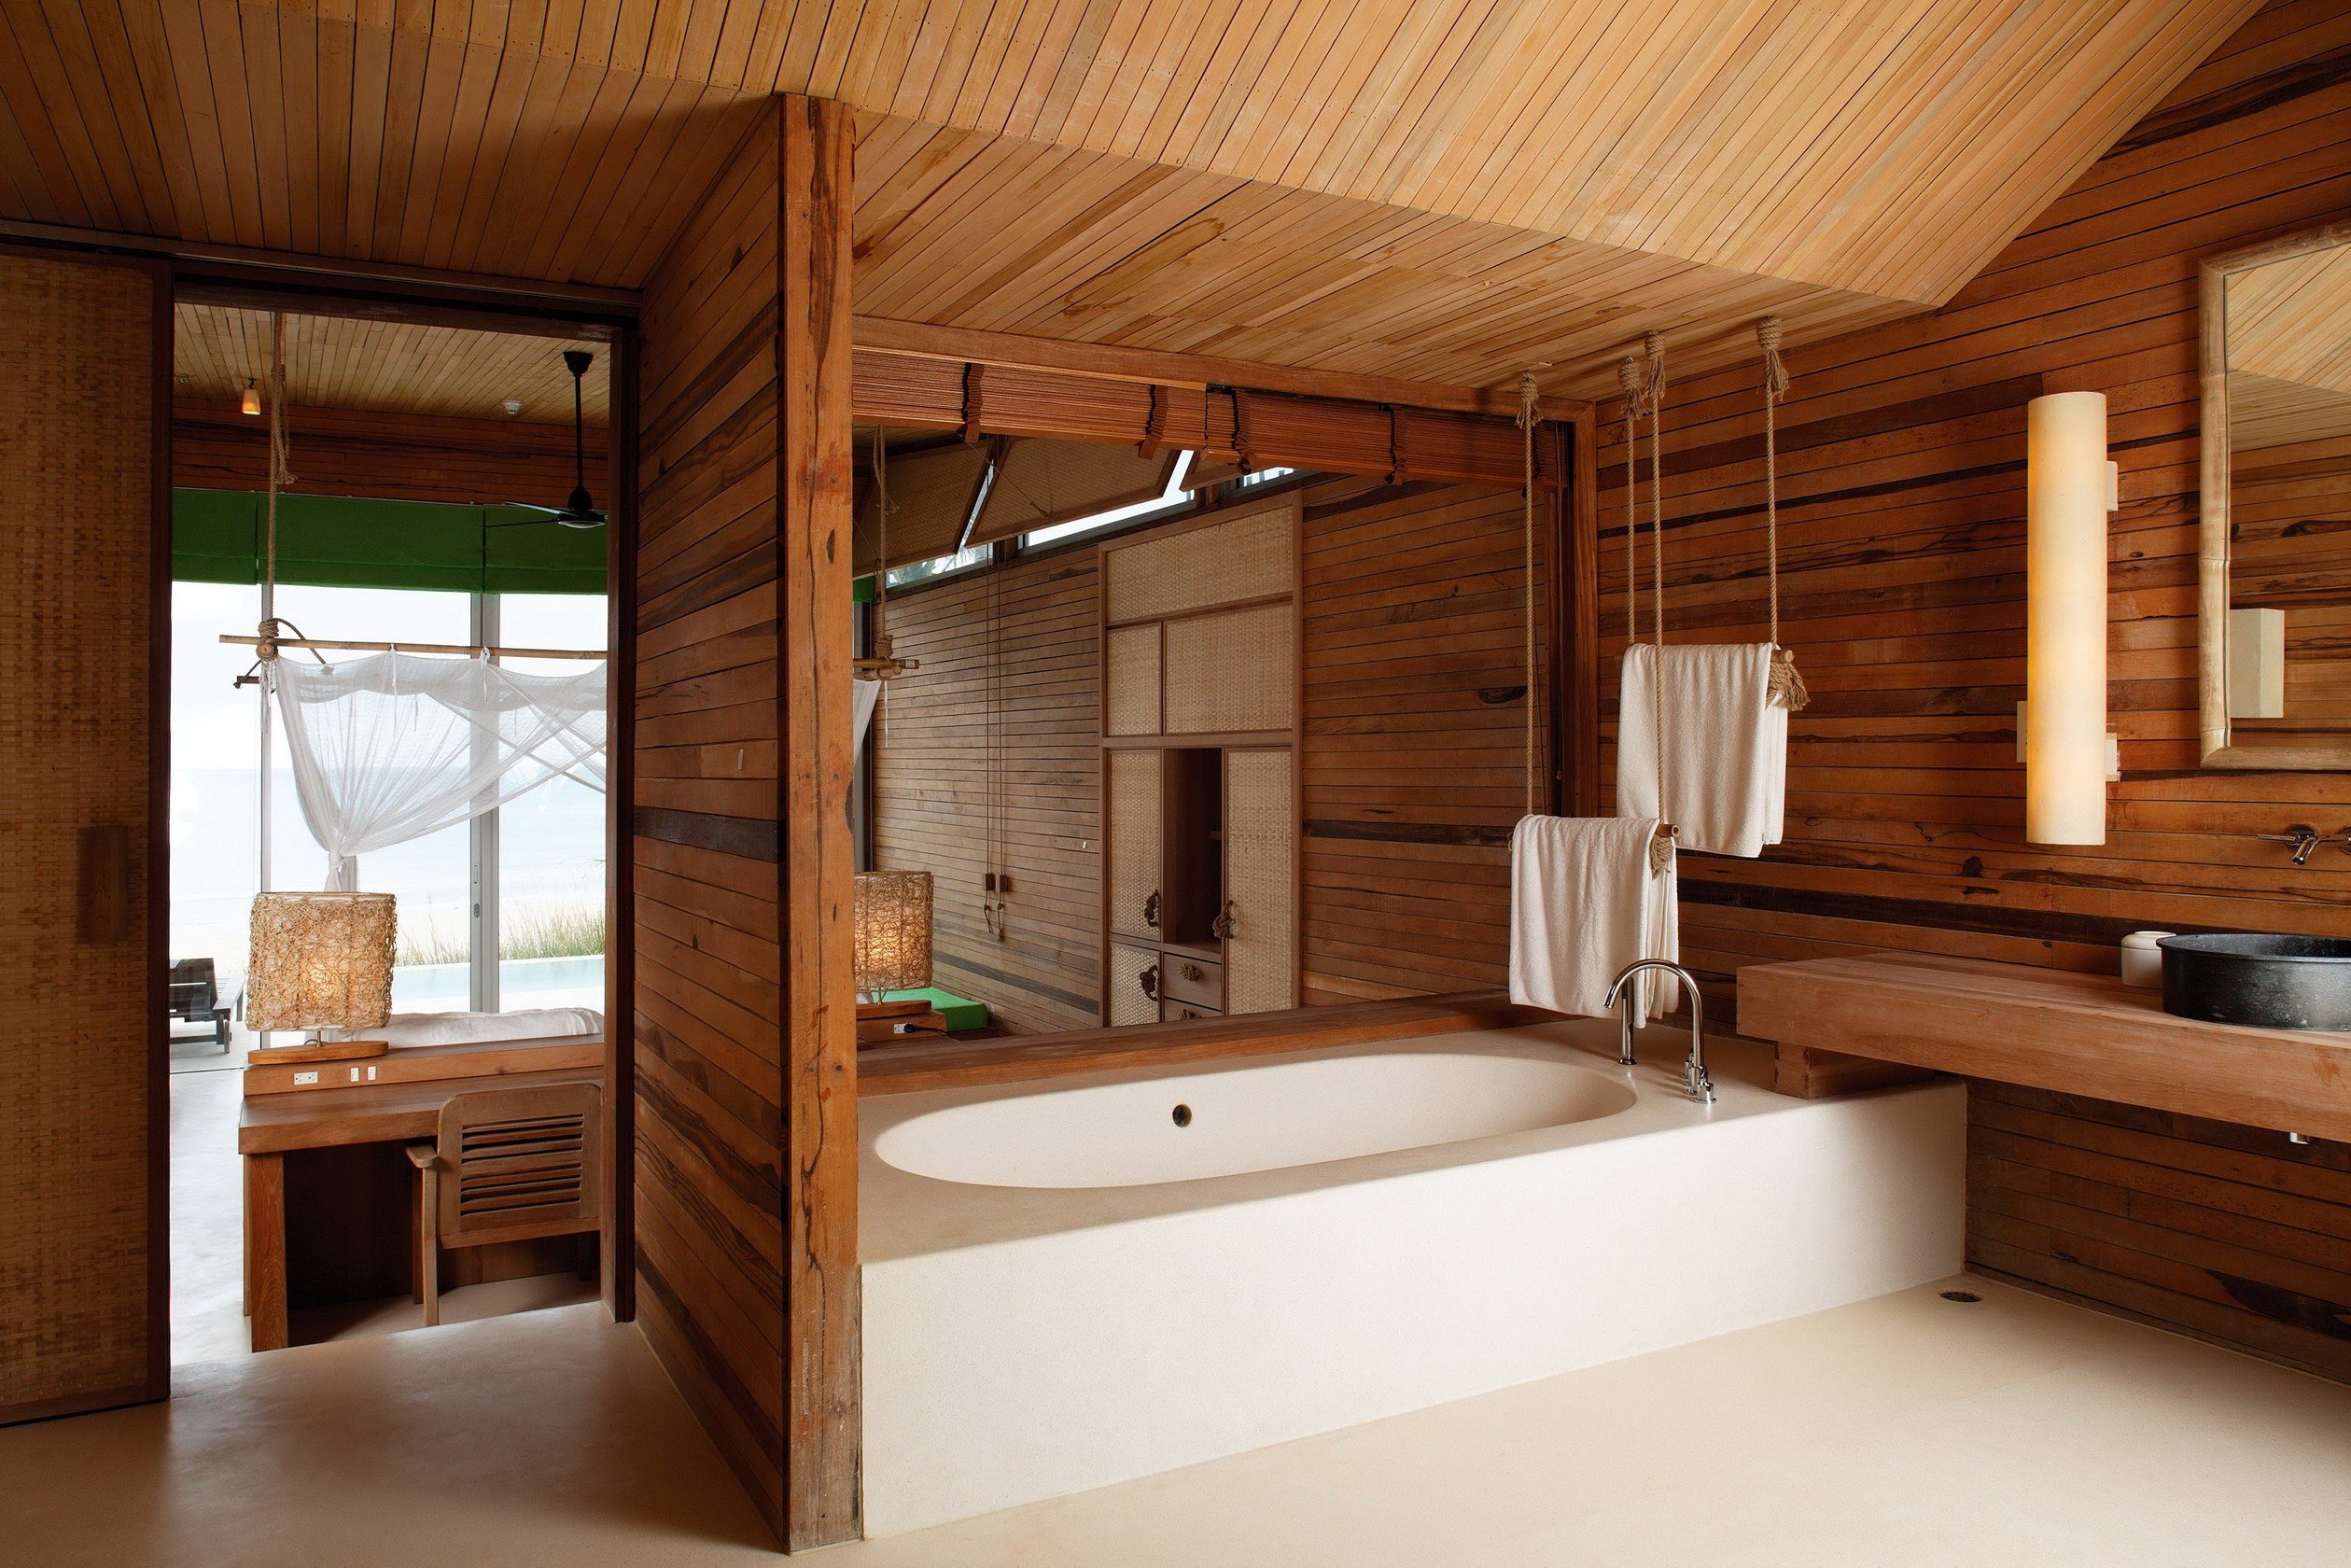 Отделка деревянной комнаты. Деревянная ванная комната. Ванная комната с деревом. Дерево в интерьере ванной комнаты. Ванная комната отделка деревом.